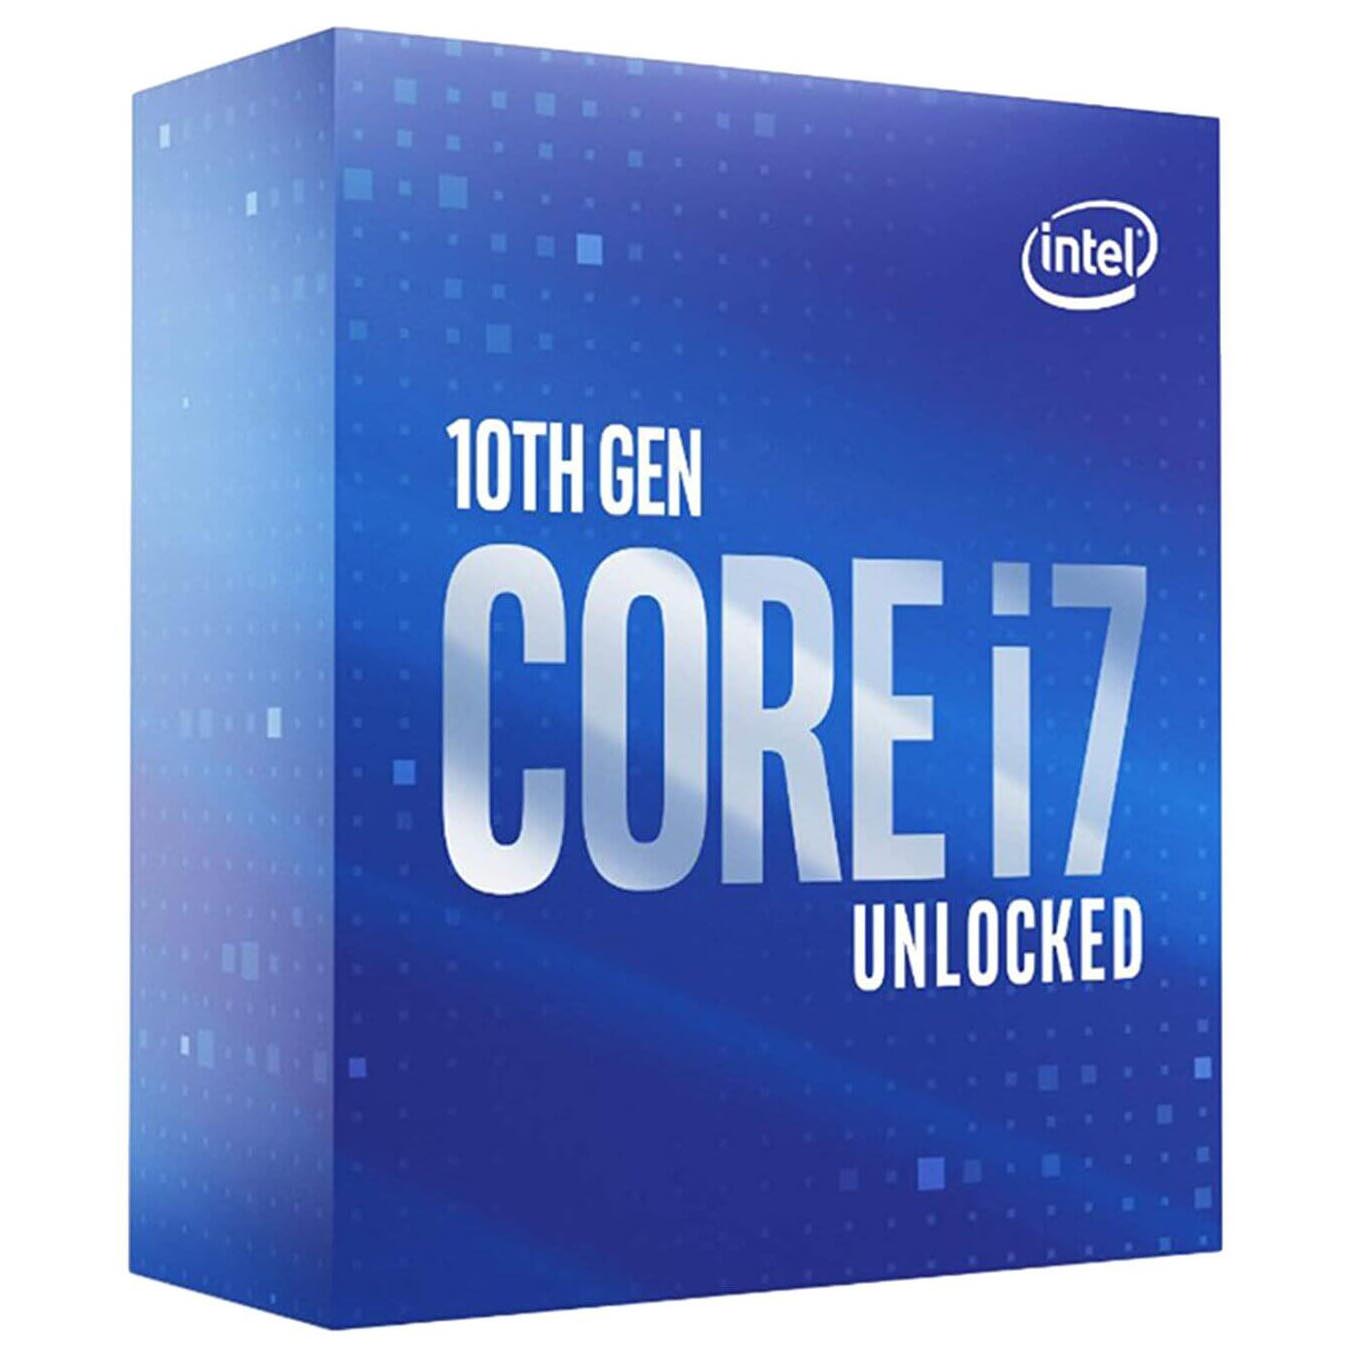 Процессор Intel Core i7-10700K BOX (без кулера), LGA 1200 процессор intel core i7 11700f box lga 1200